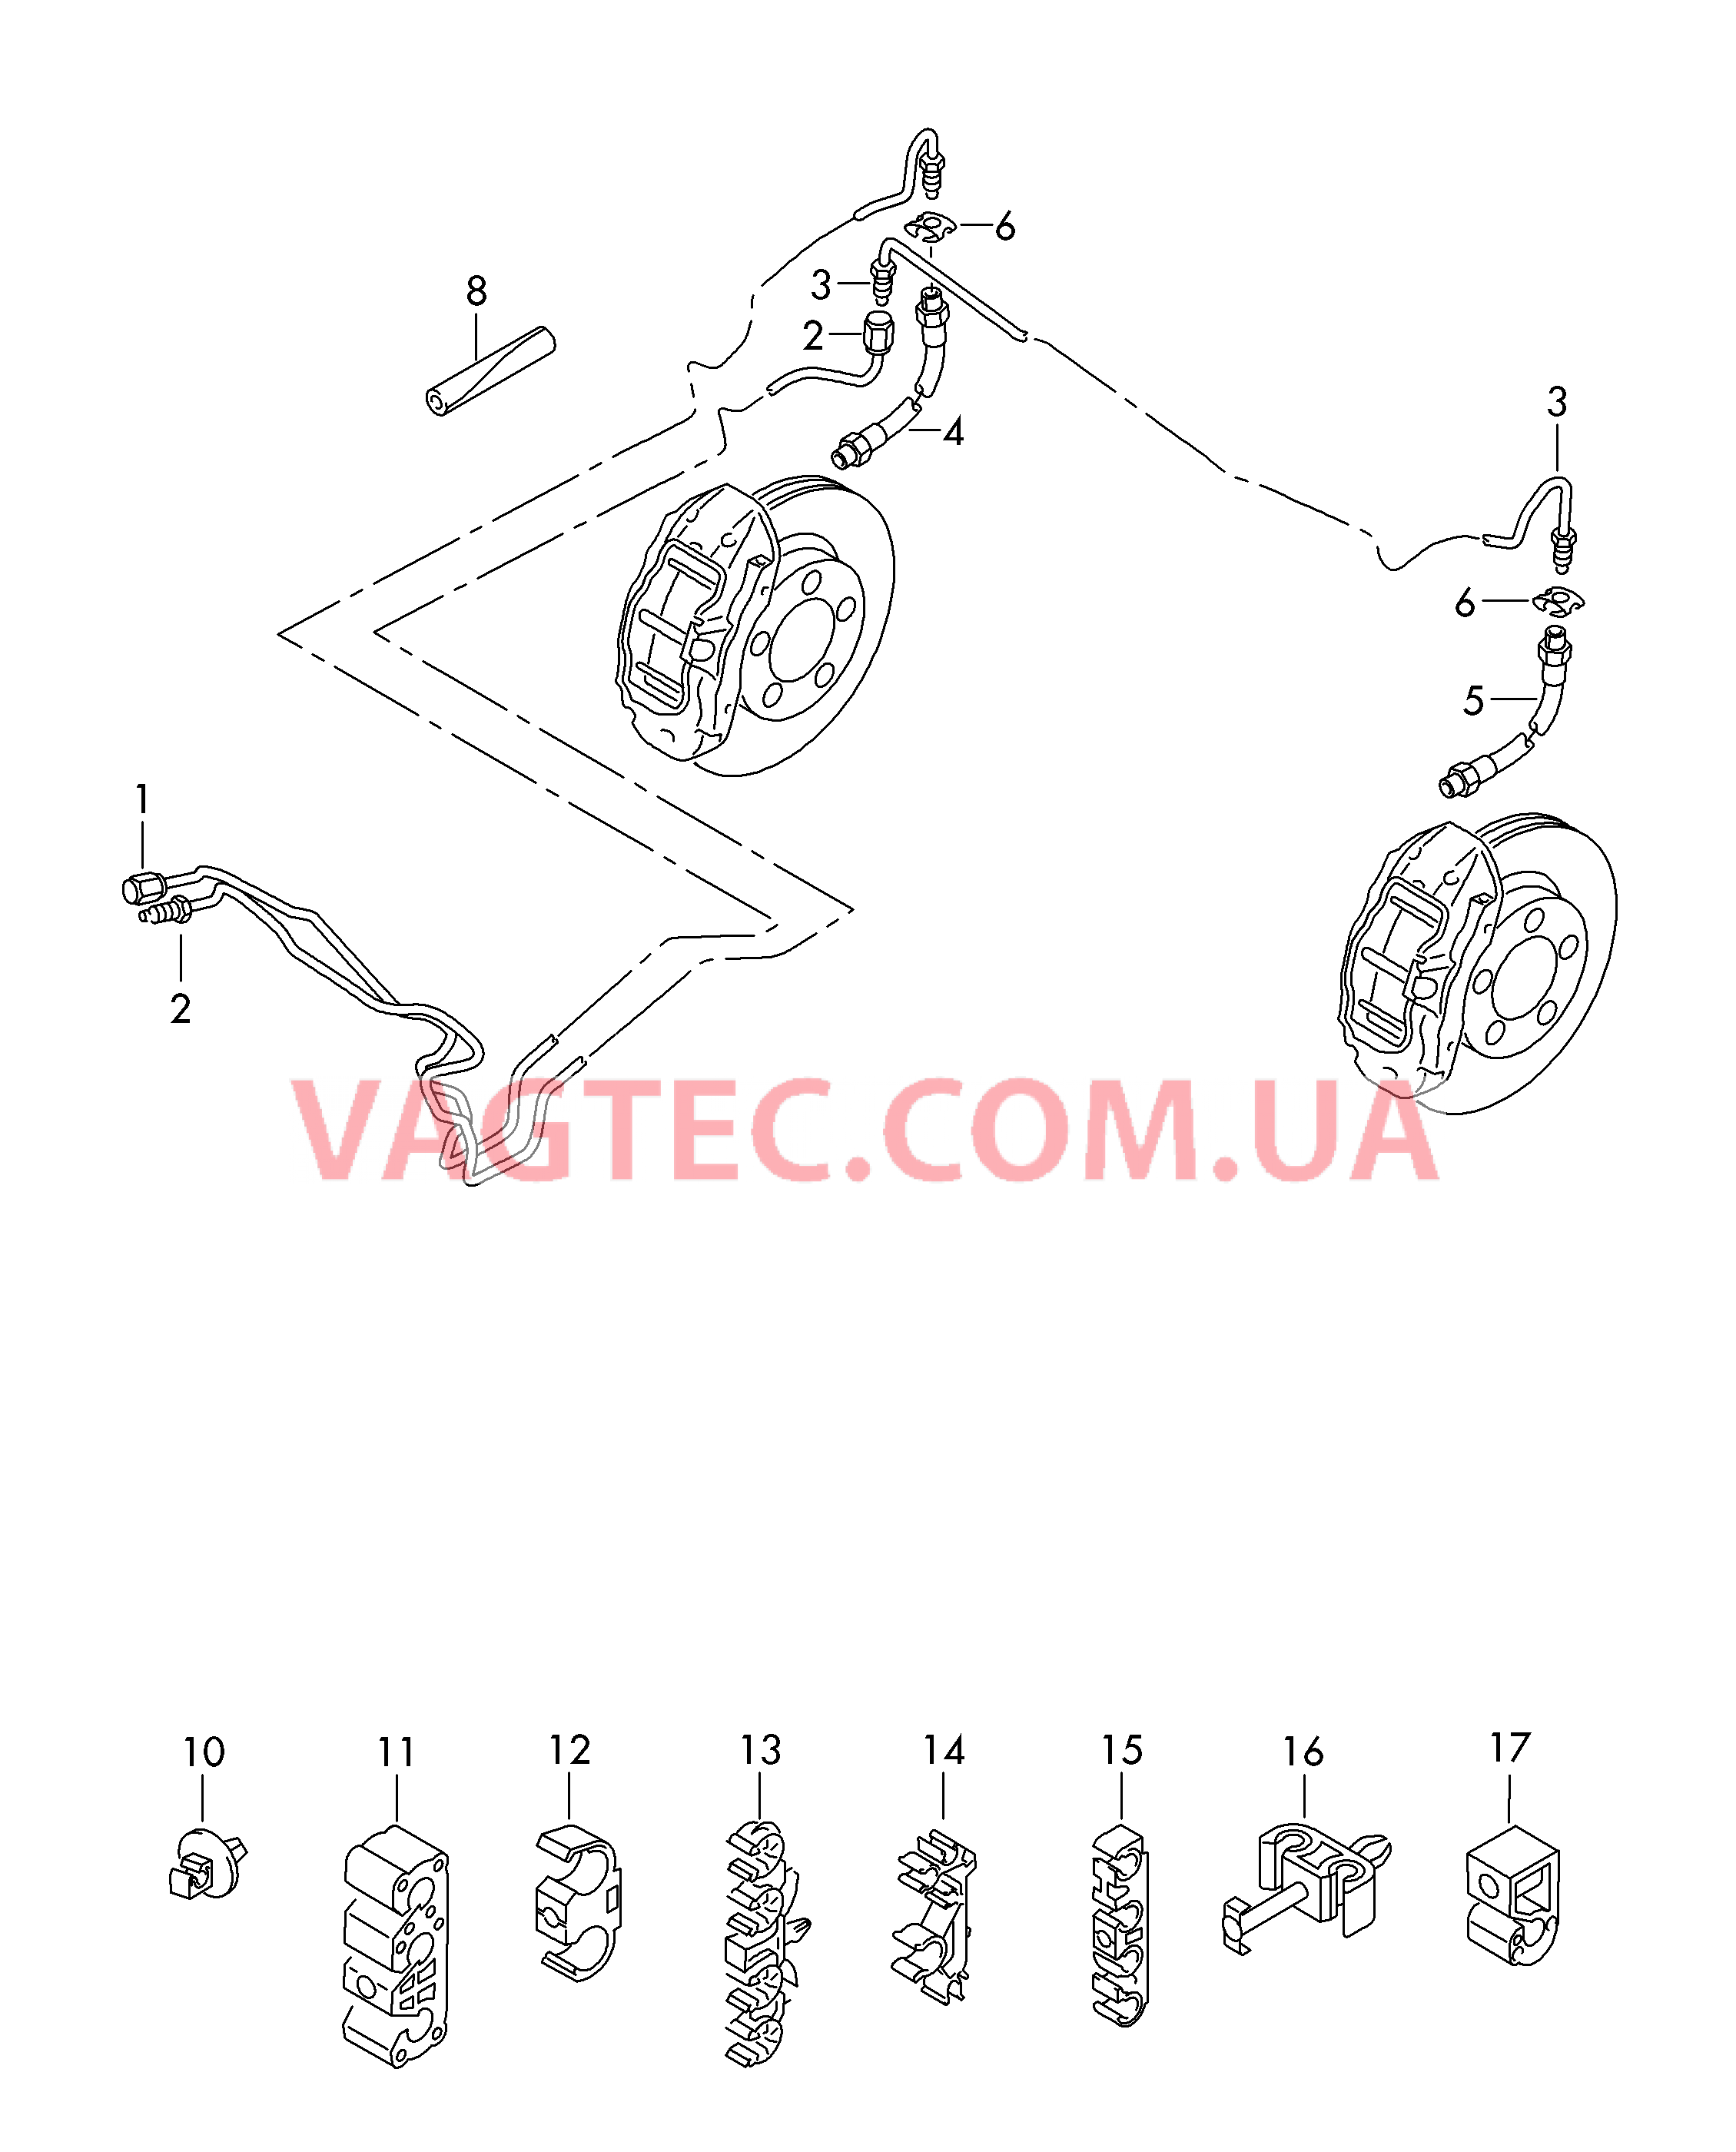 Тормозная трубка Тормозной шланг  для VOLKSWAGEN Touareg 2015